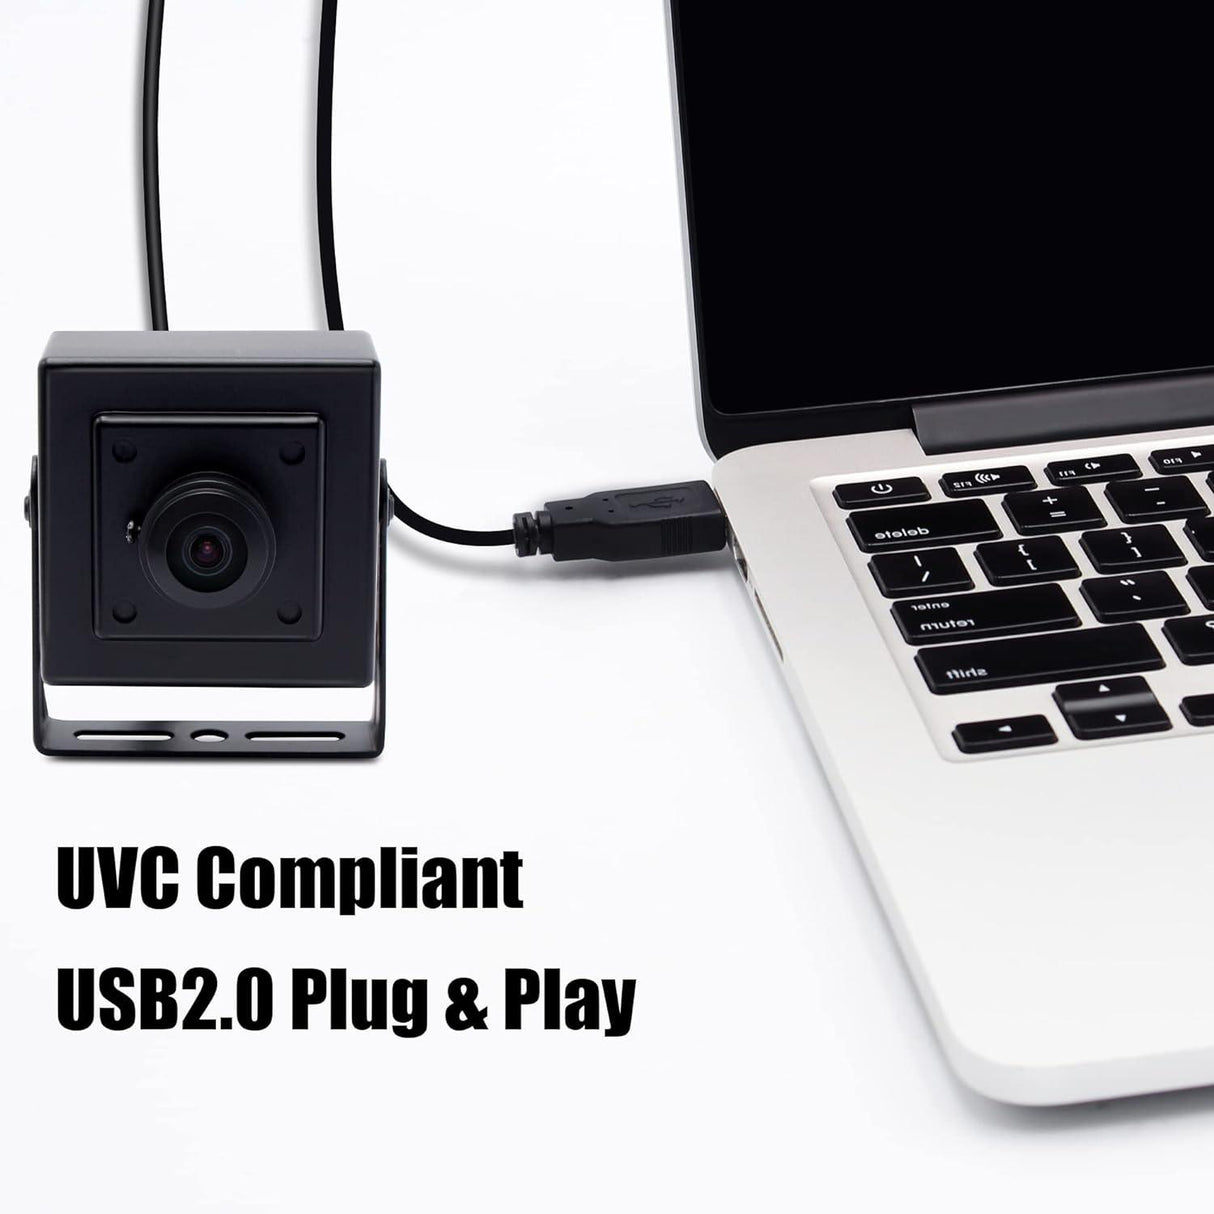 8MP USB Kamera Modul Házban, Fisheye Széles Látószögű Webkamera - Outlet24